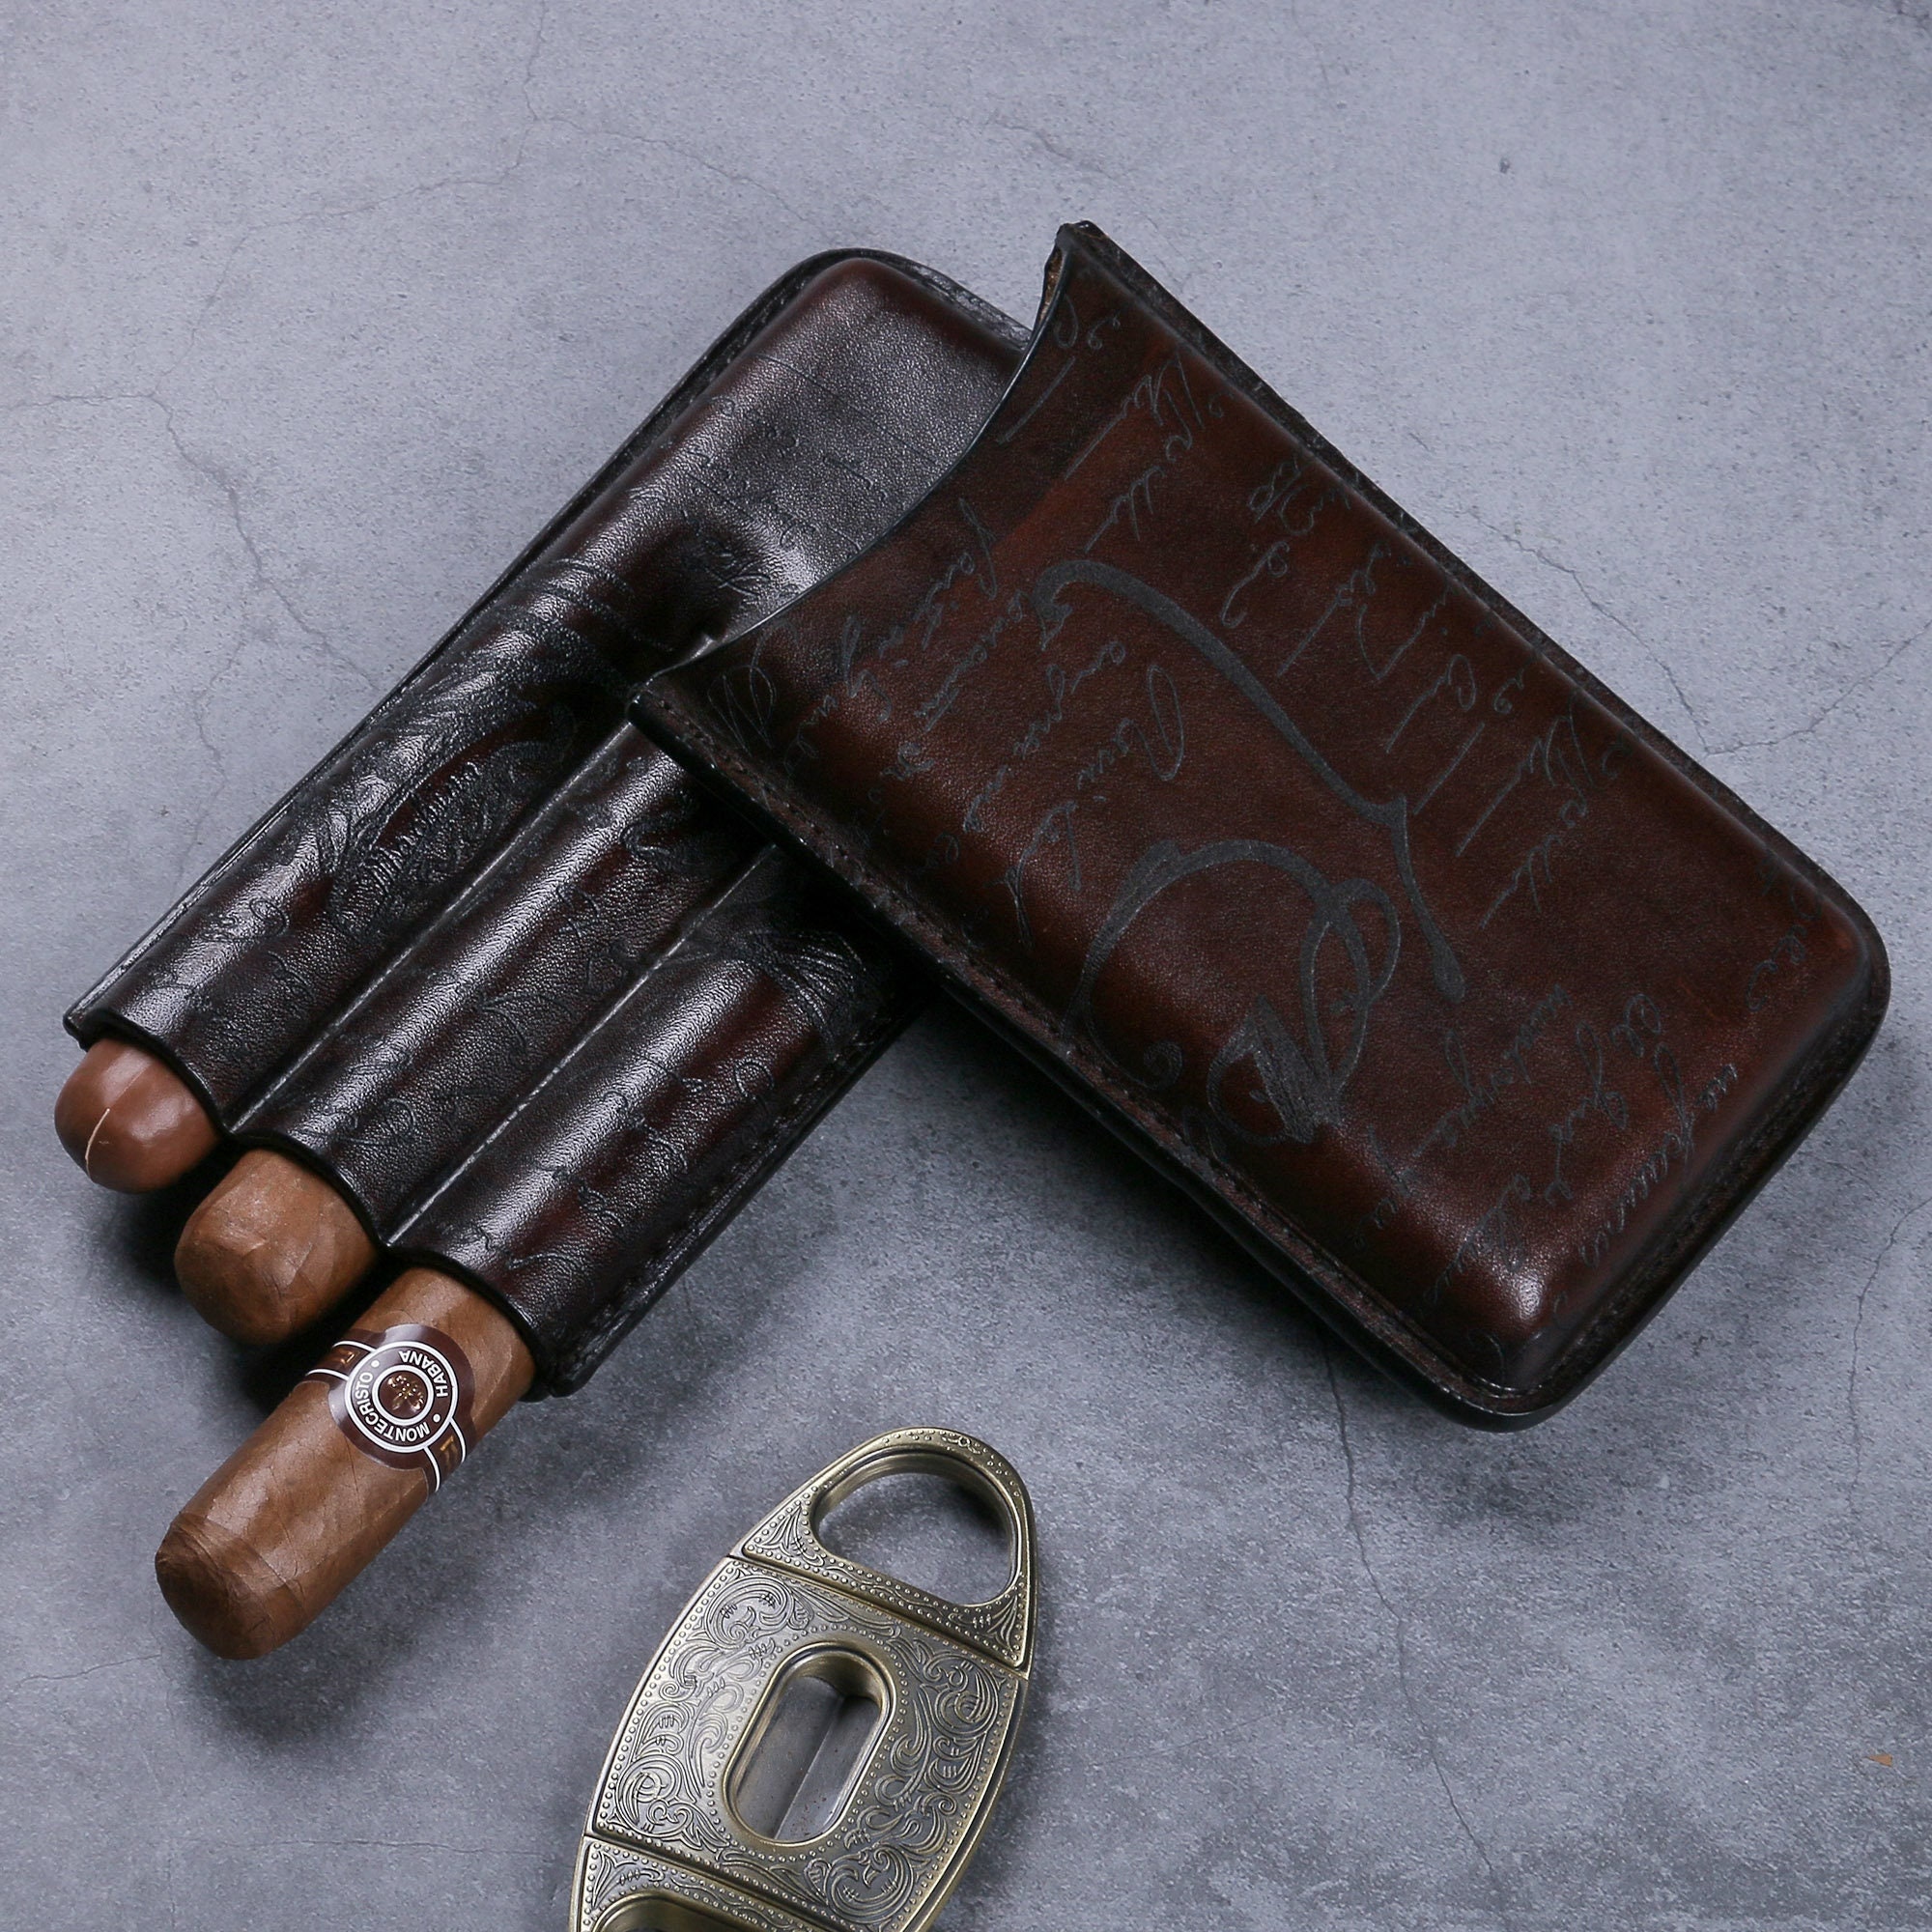 Vintage Leather Cigars Case Cigar Travel Case 3 Tubes 